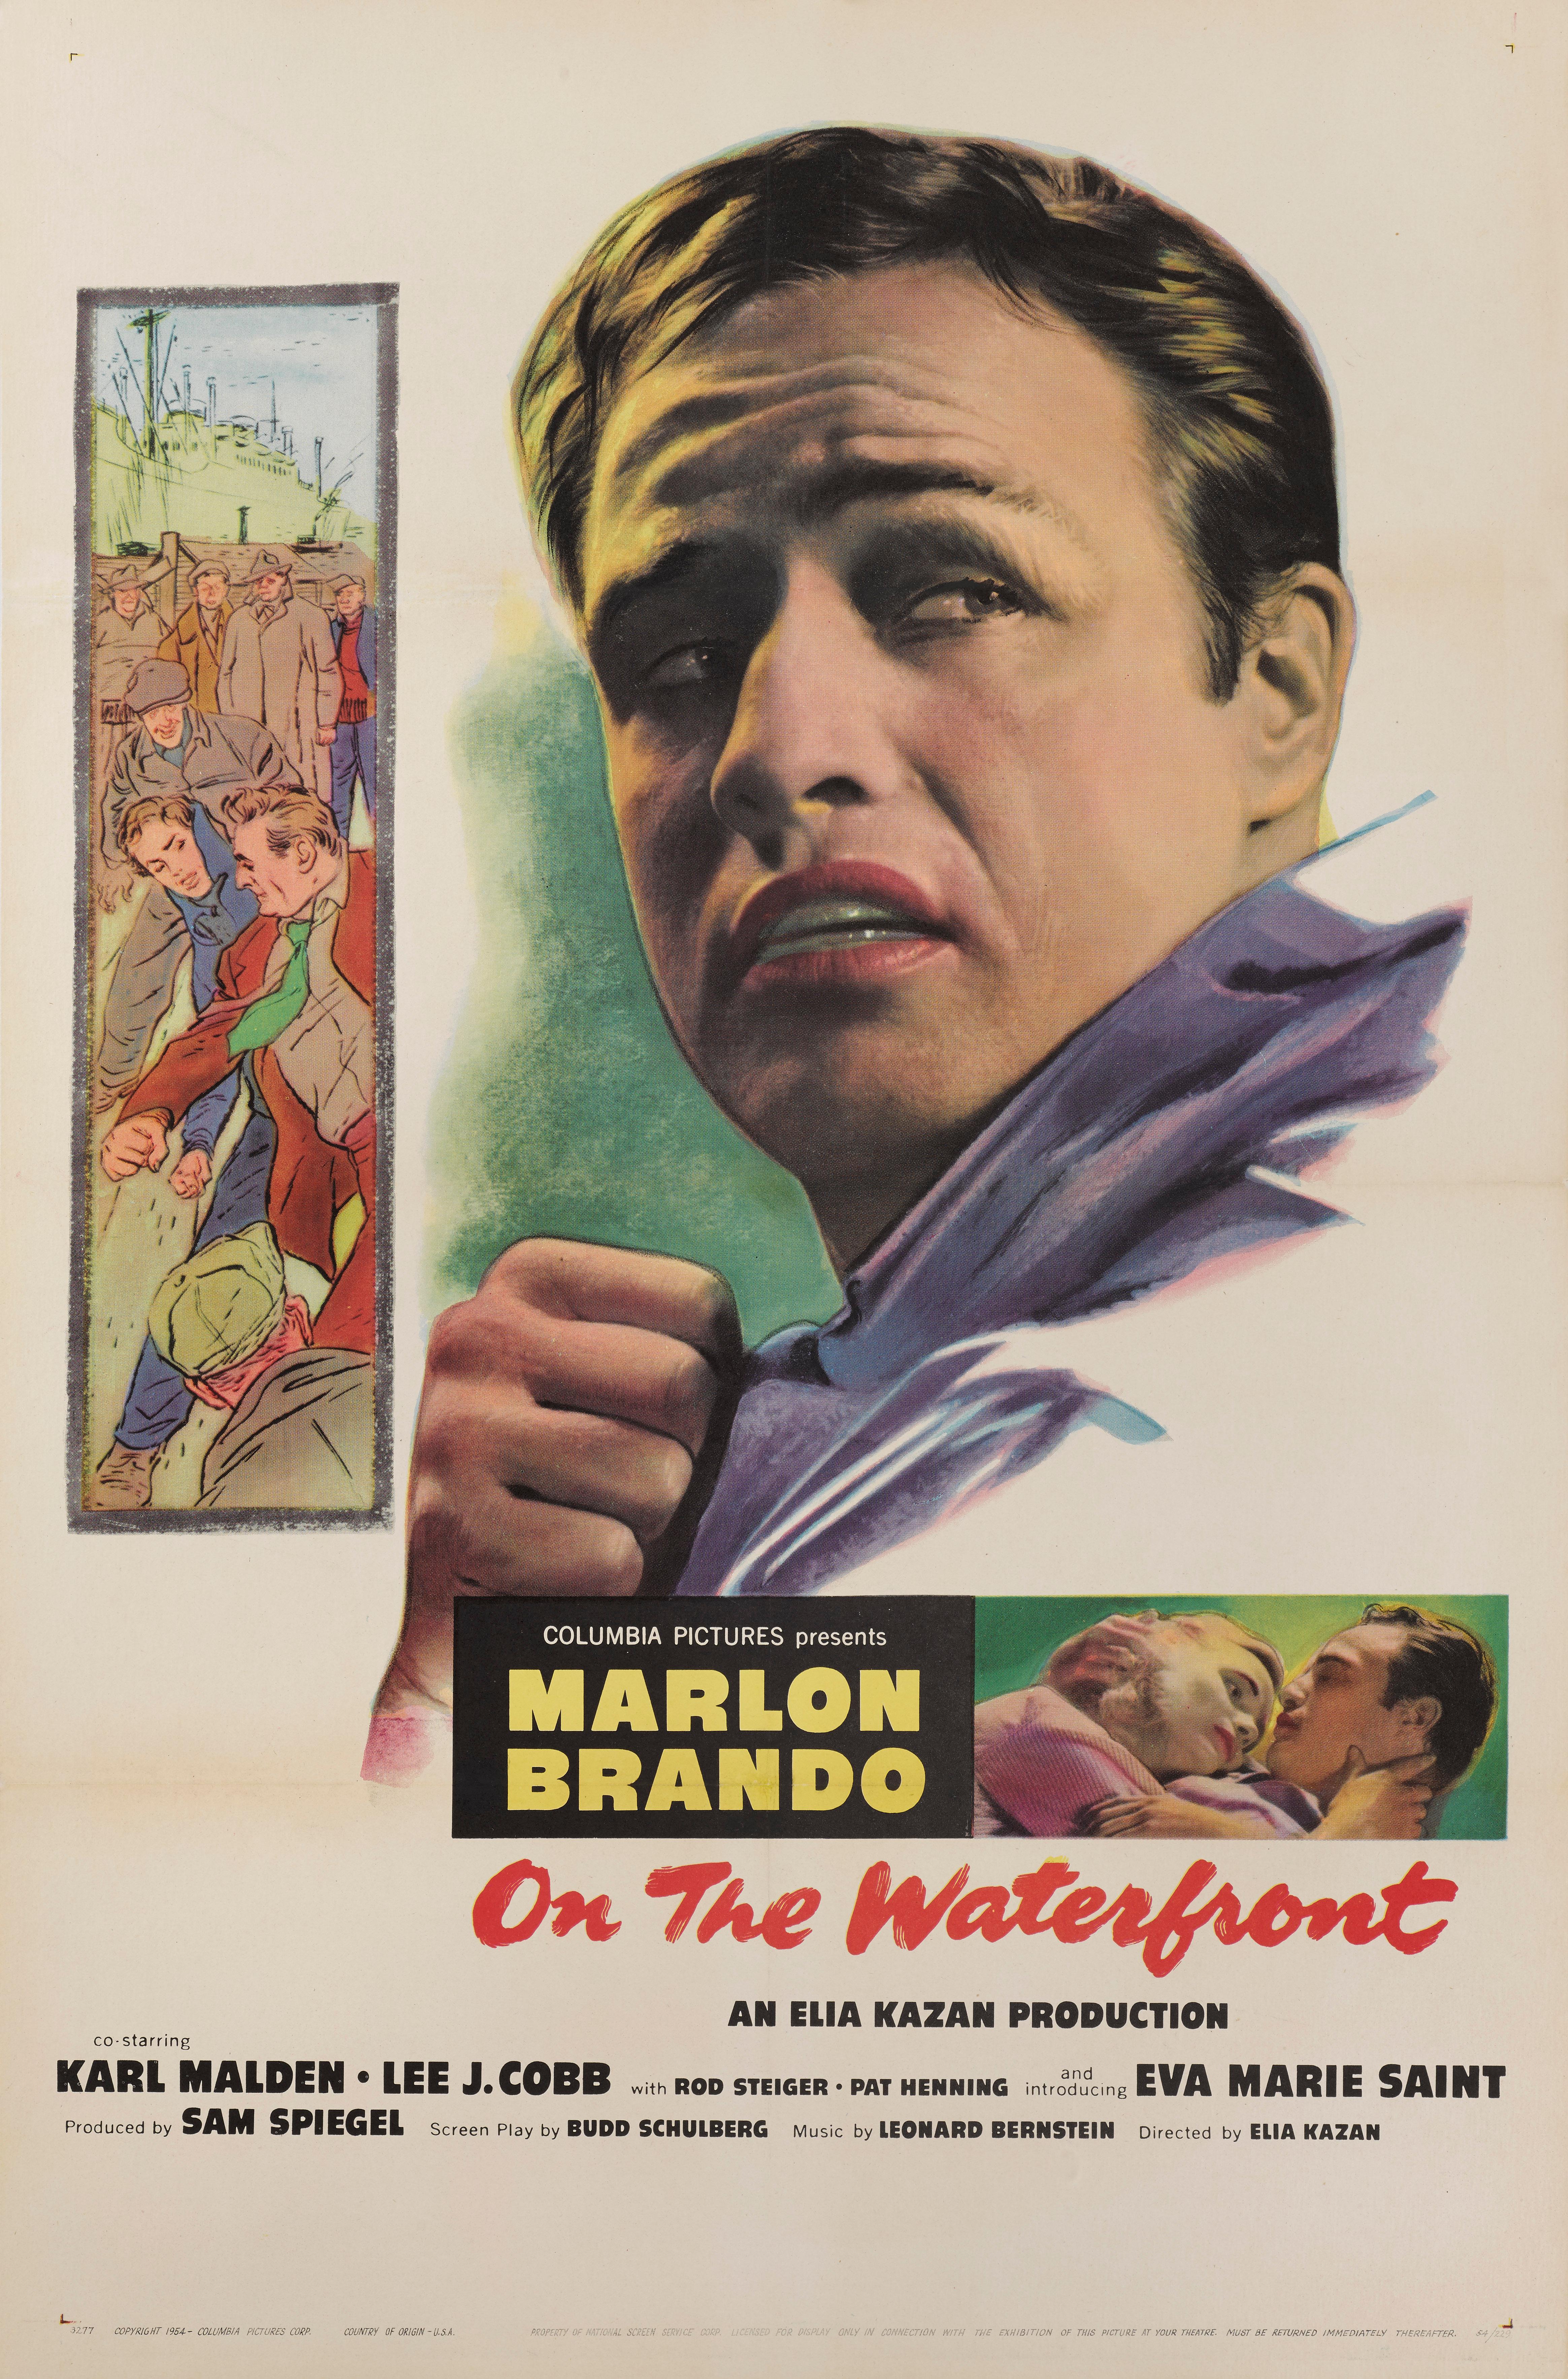 Affiche originale du film américain de (1954) 41 x 27 in. (104 x 69 cm)
Cette affiche aurait été utilisée à l'extérieur du cinéma lors de la sortie originale du film.
Il s'agit d'un drame policier américain classique qui a reçu 12 nominations aux